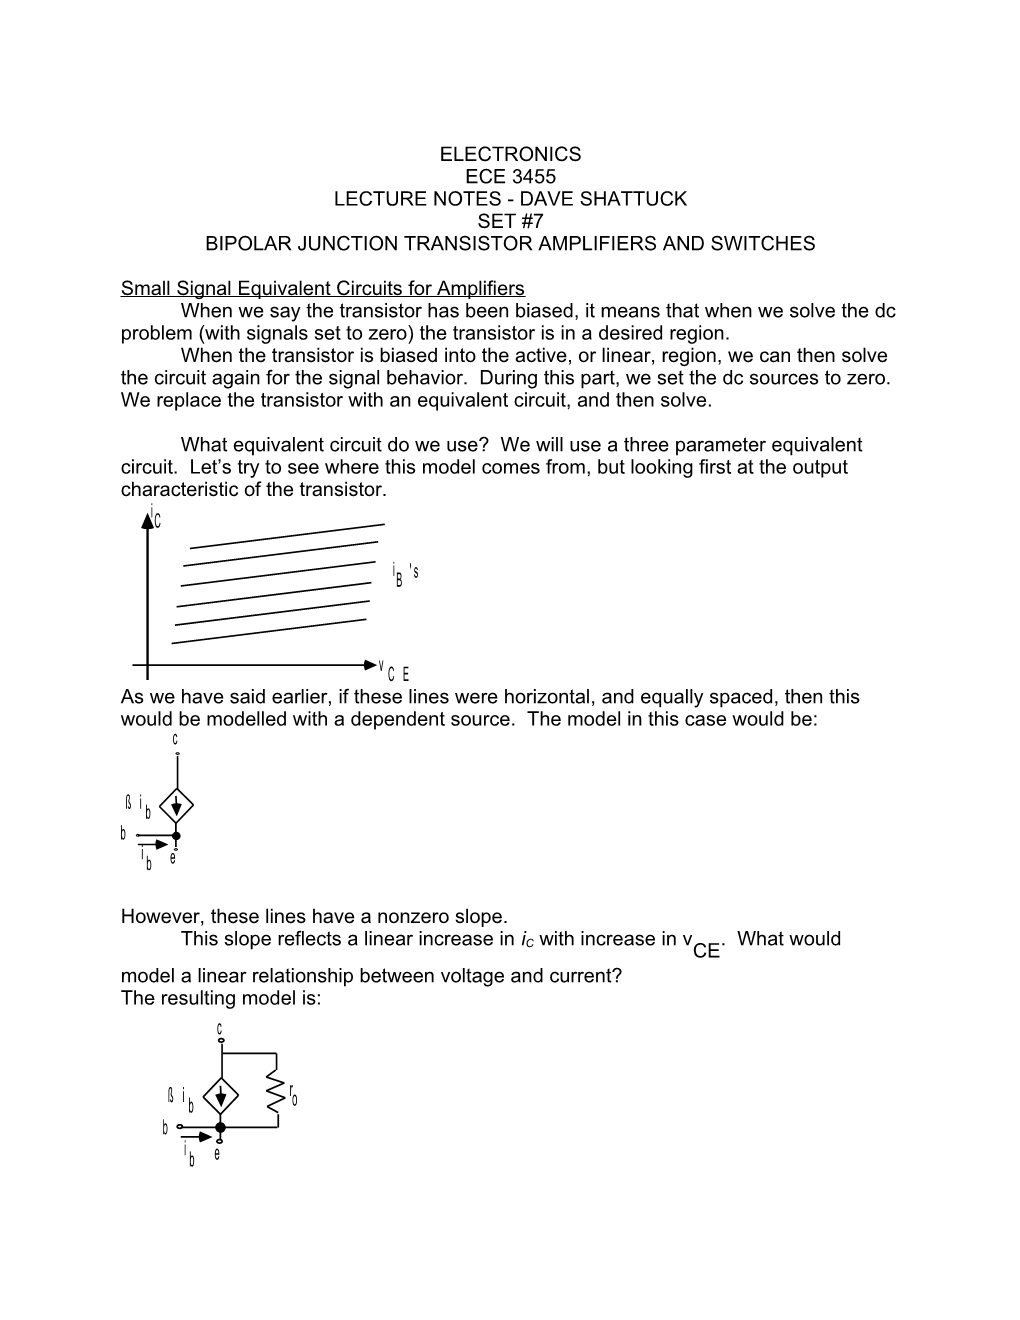 ECE 3455 Electronics Lecture Notes Set #7 Version 23